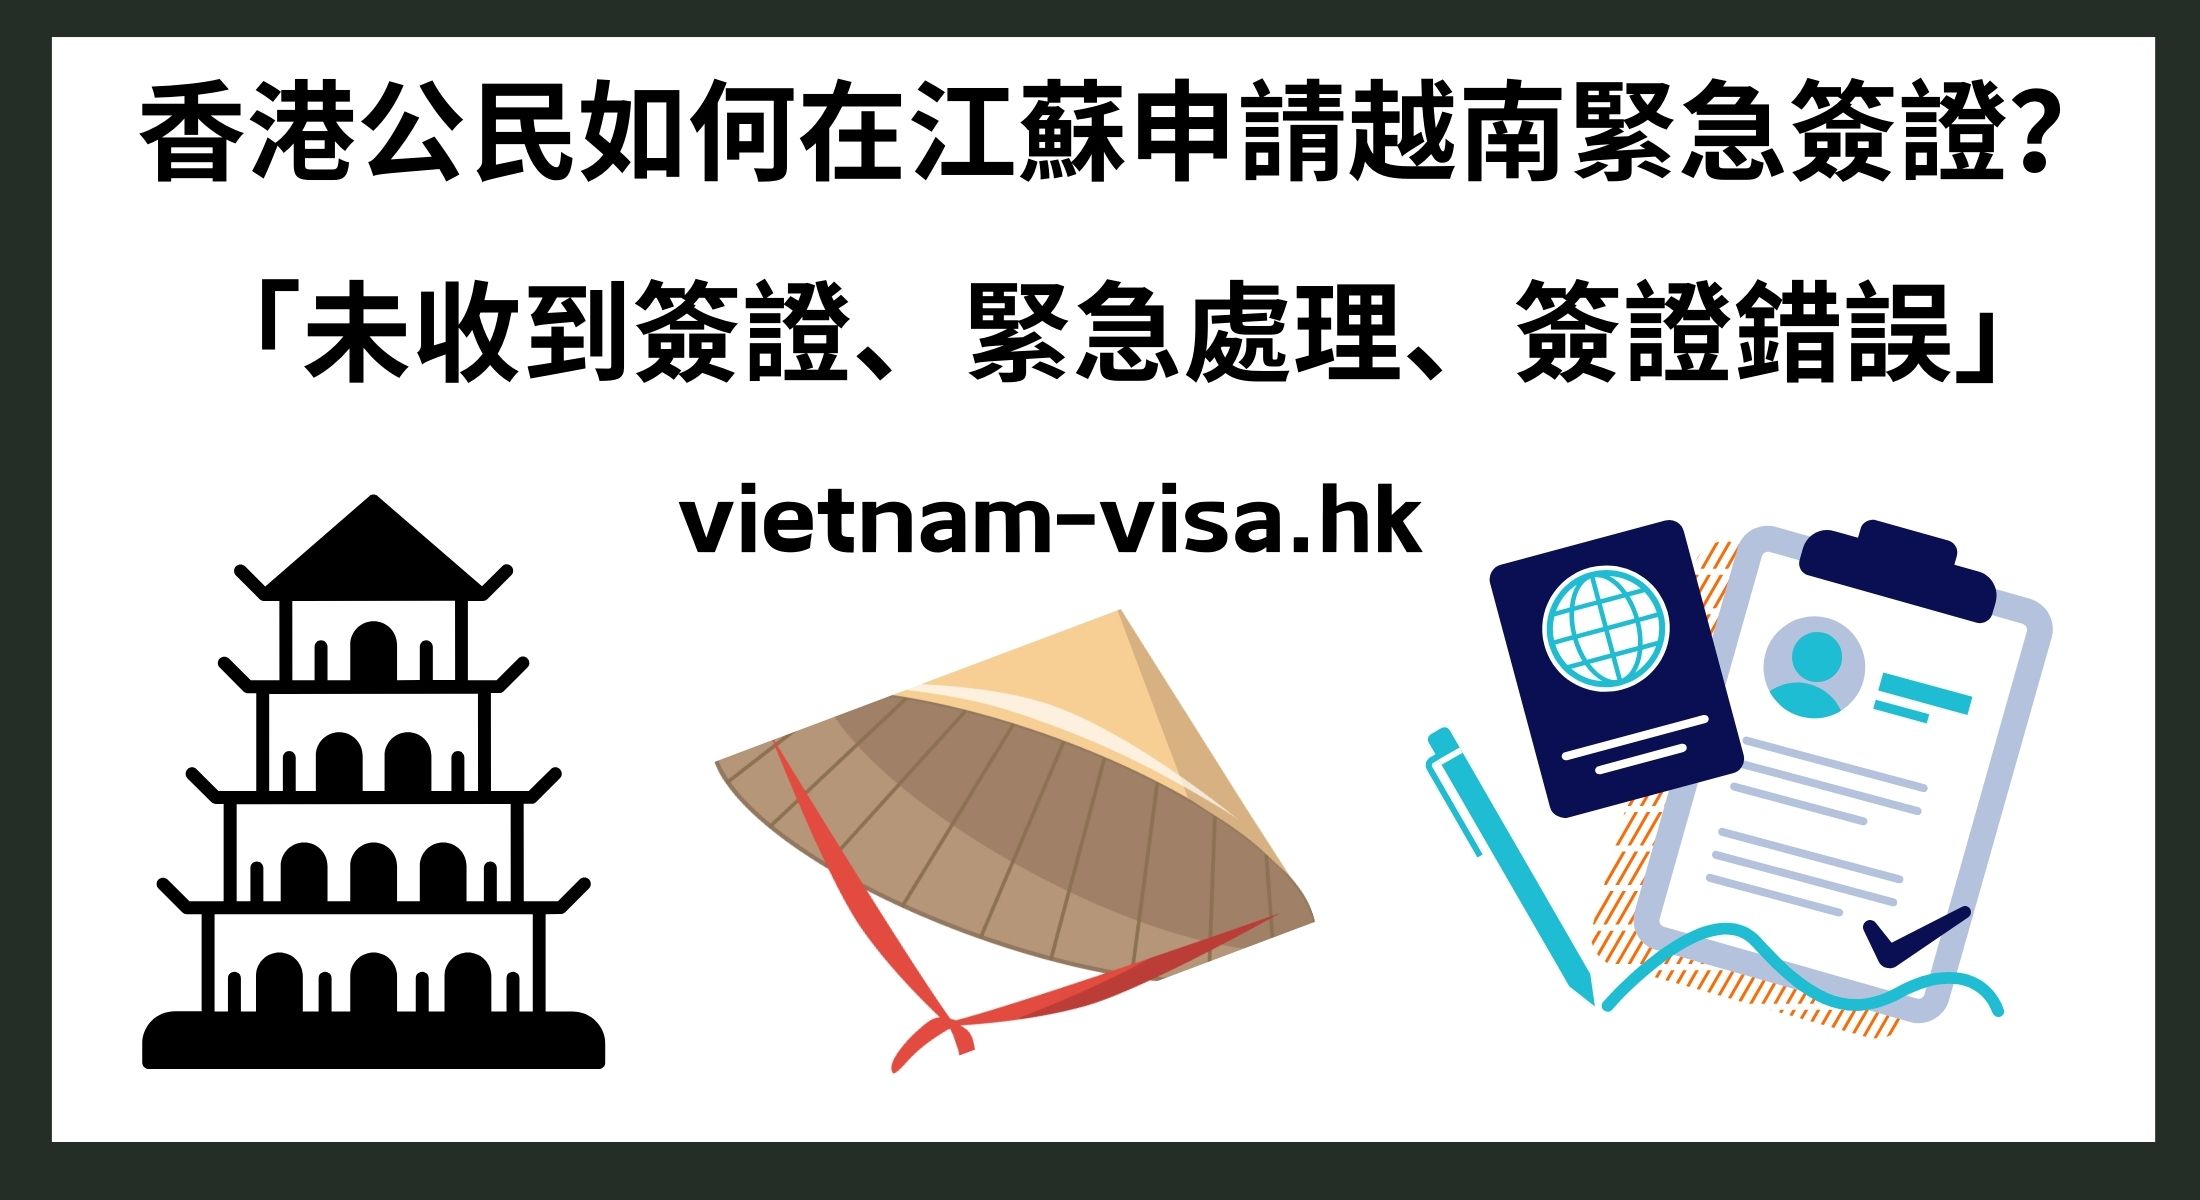 香港公民如何在江蘇申請越南緊急簽證？ 「未收到簽證、緊急處理、簽證錯誤」